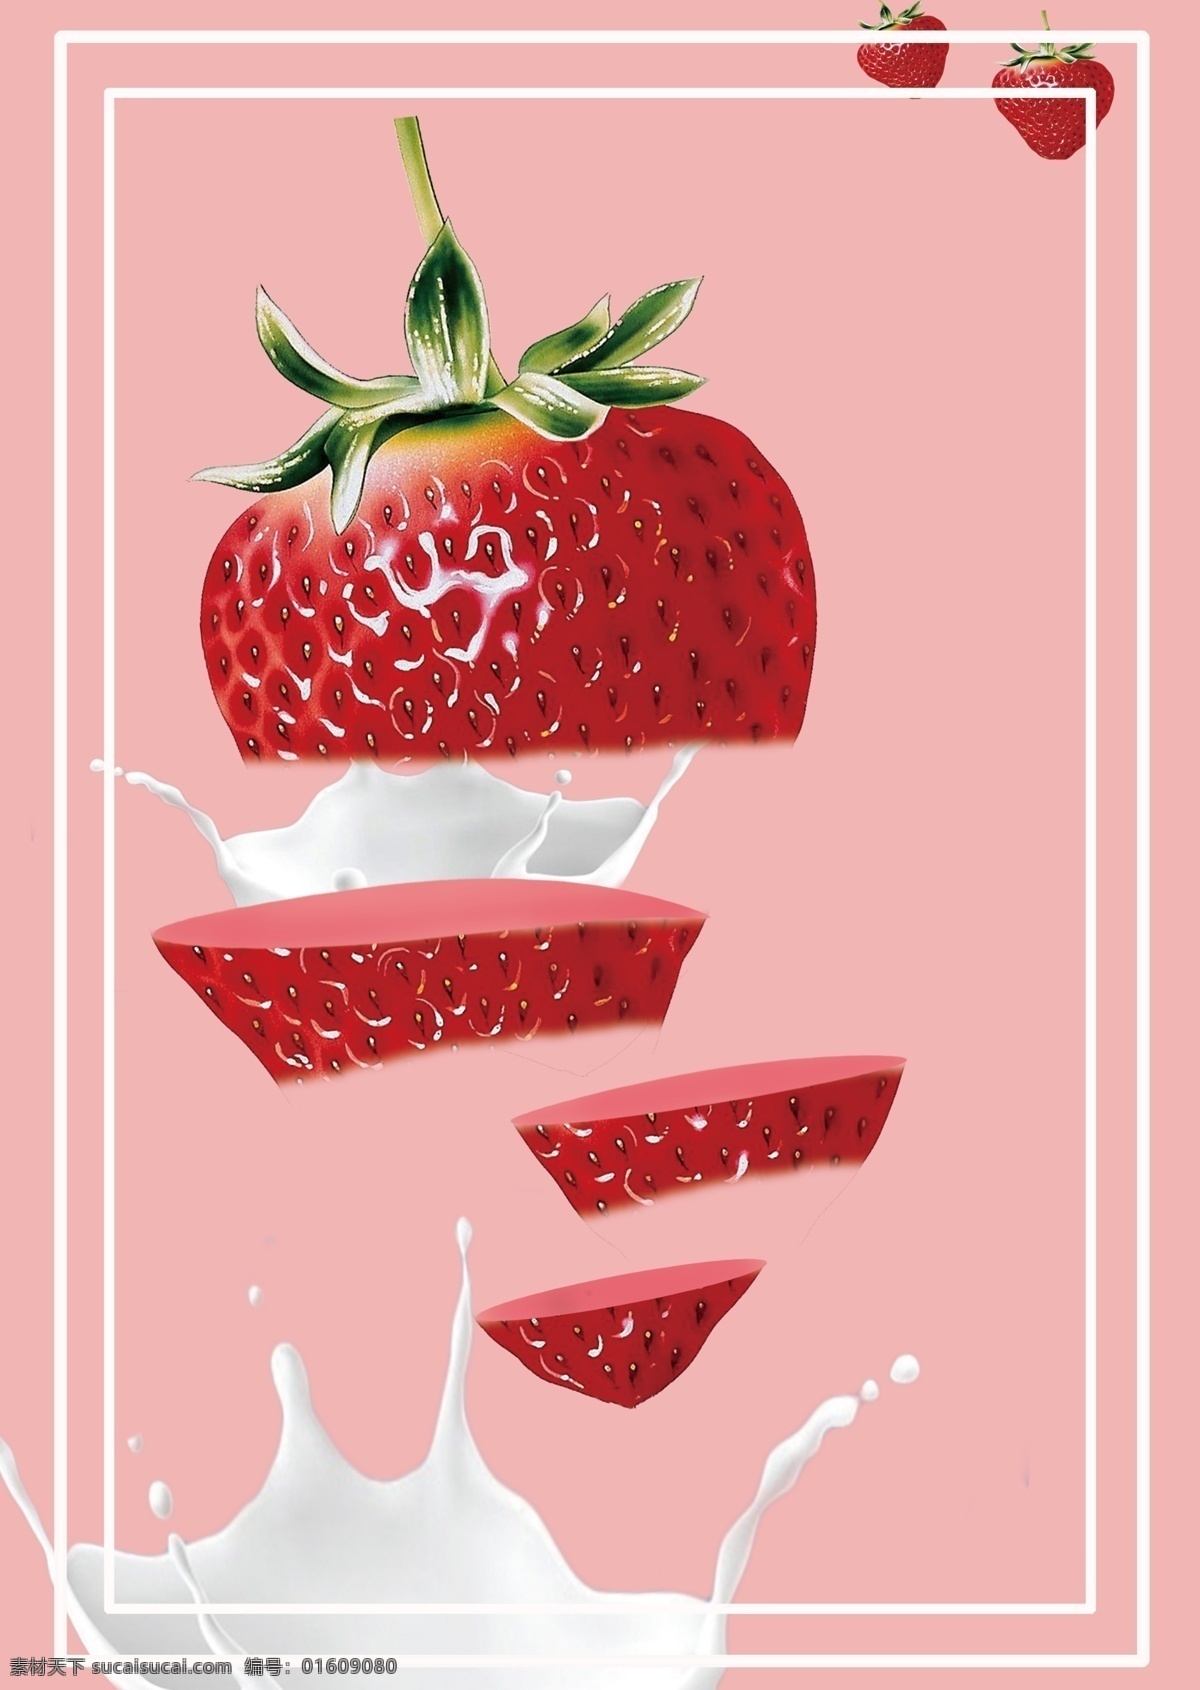 牛奶草莓 牛奶 草莓 海报 线条 白色 红色 粉色 切割 穿插 浪漫 可爱